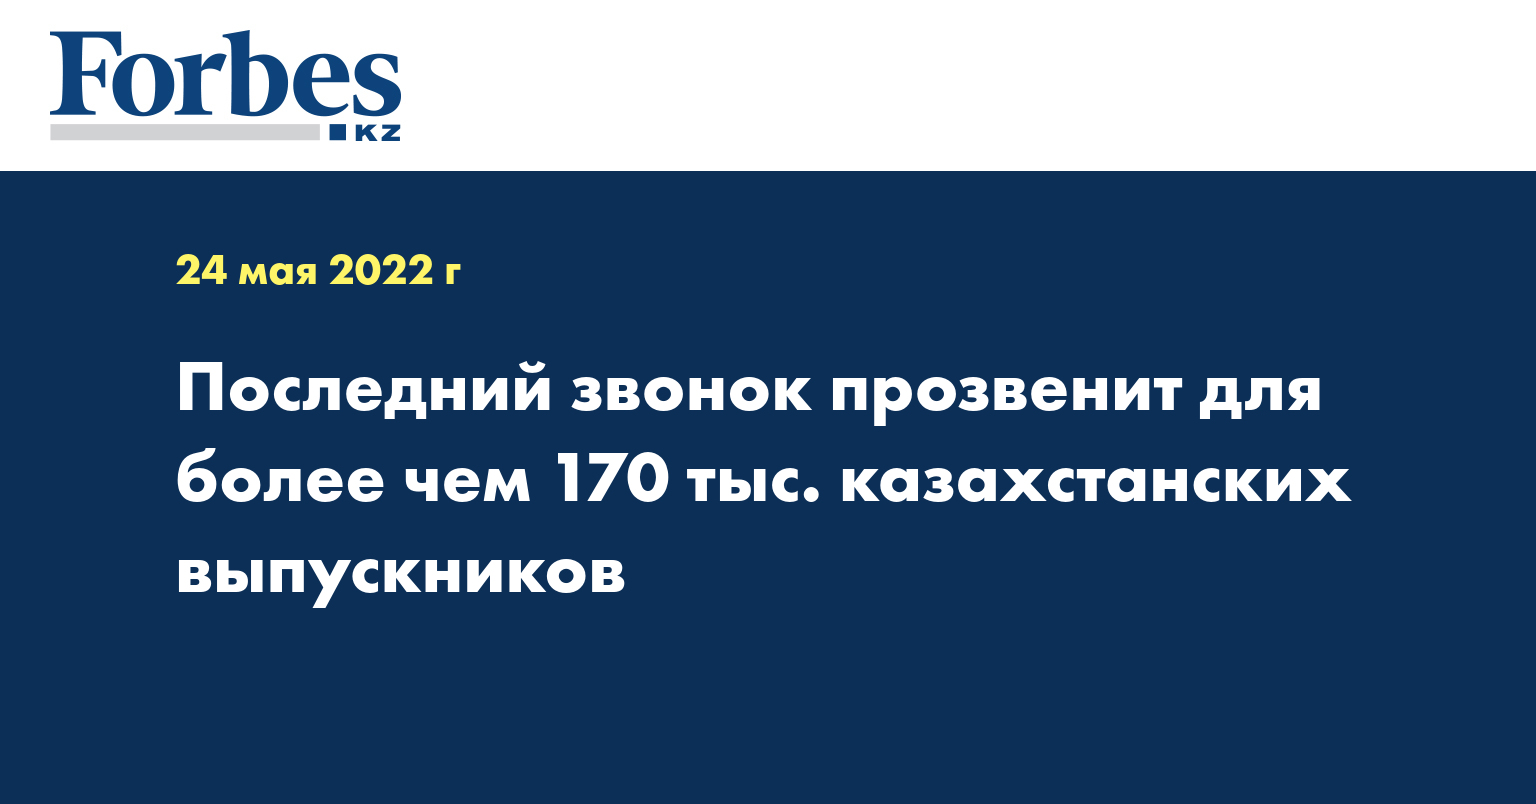 Последний звонок прозвенит для более чем 170 тыс. казахстанских выпускников